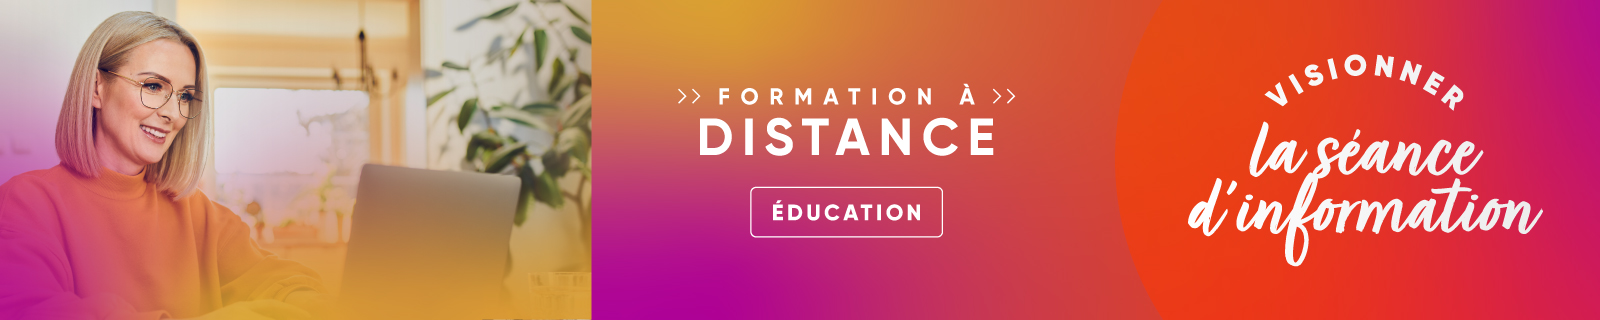 Séance d'information - Formation à distance - Éducation